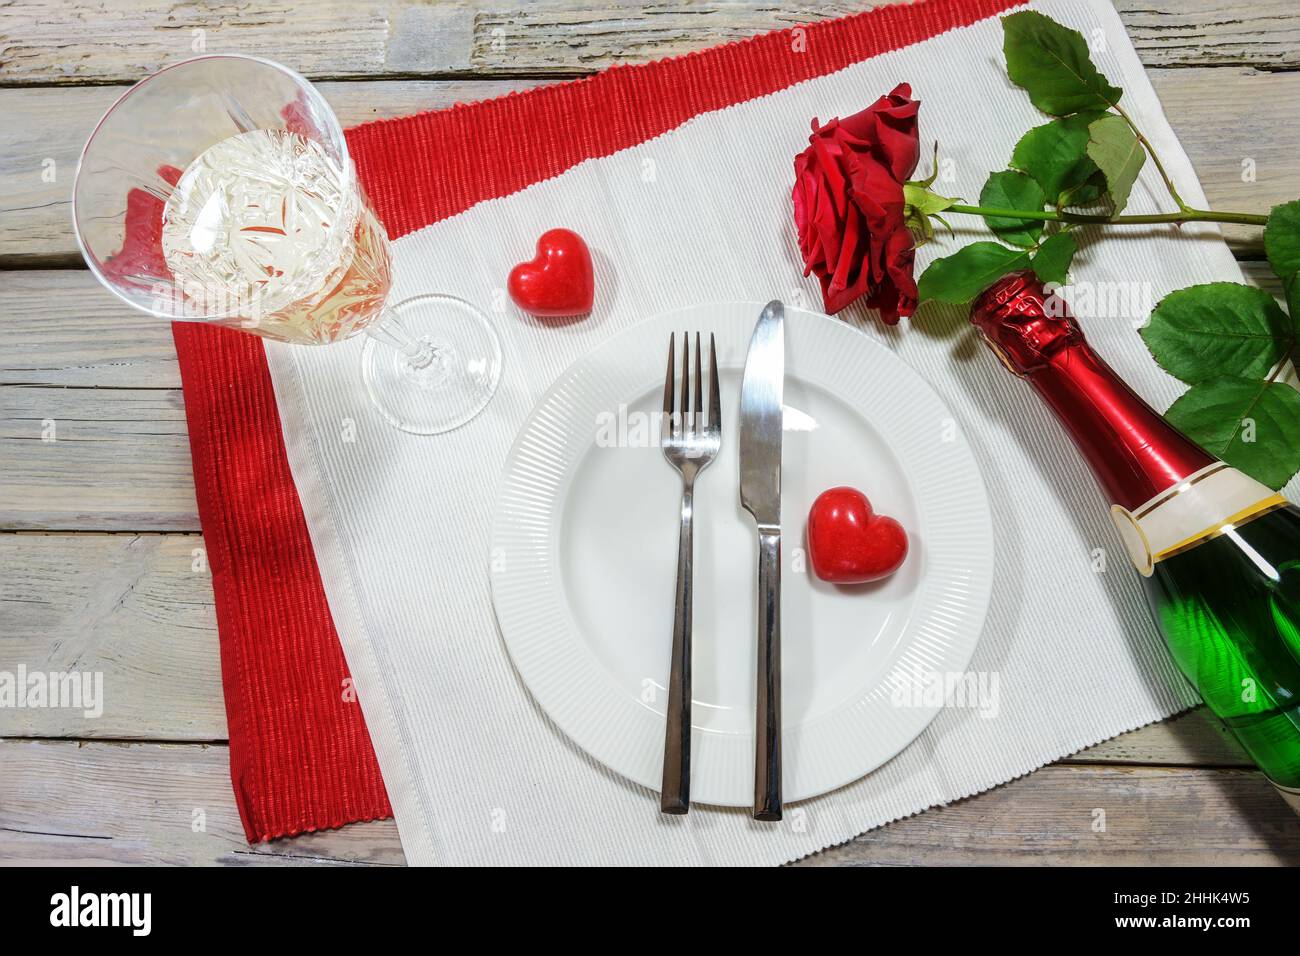 Table pour un dîner de la Saint-Valentin, rose rouge et deux coeurs, verre de chapagne et bouteille autour d'une assiette blanche sur les serviettes et sur une table rustique en bois Banque D'Images